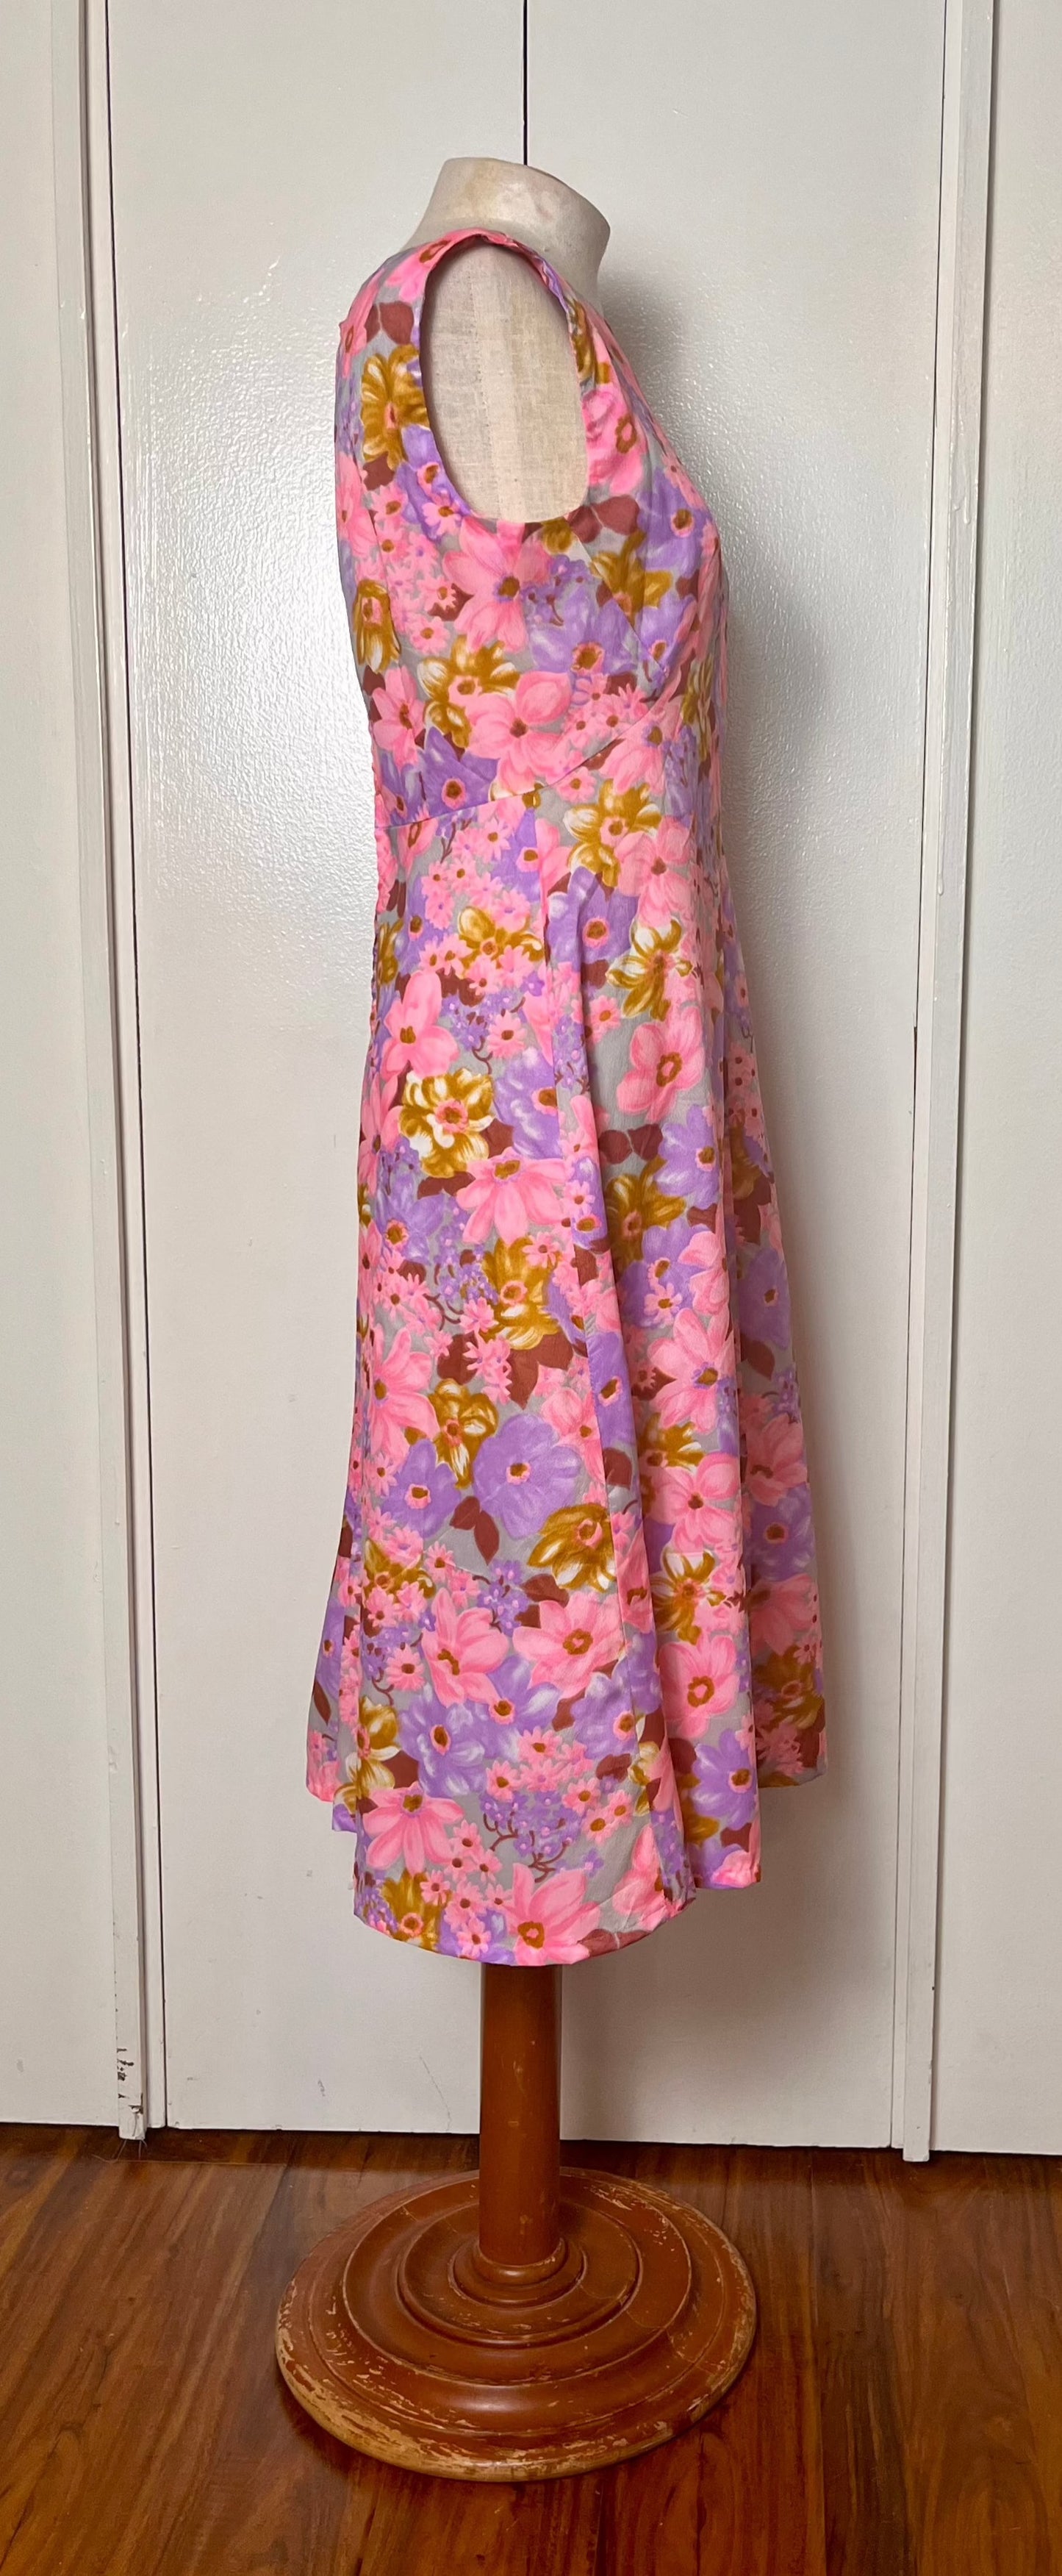 Vintage 1970's "Home-sewn" Pink Floral Dress